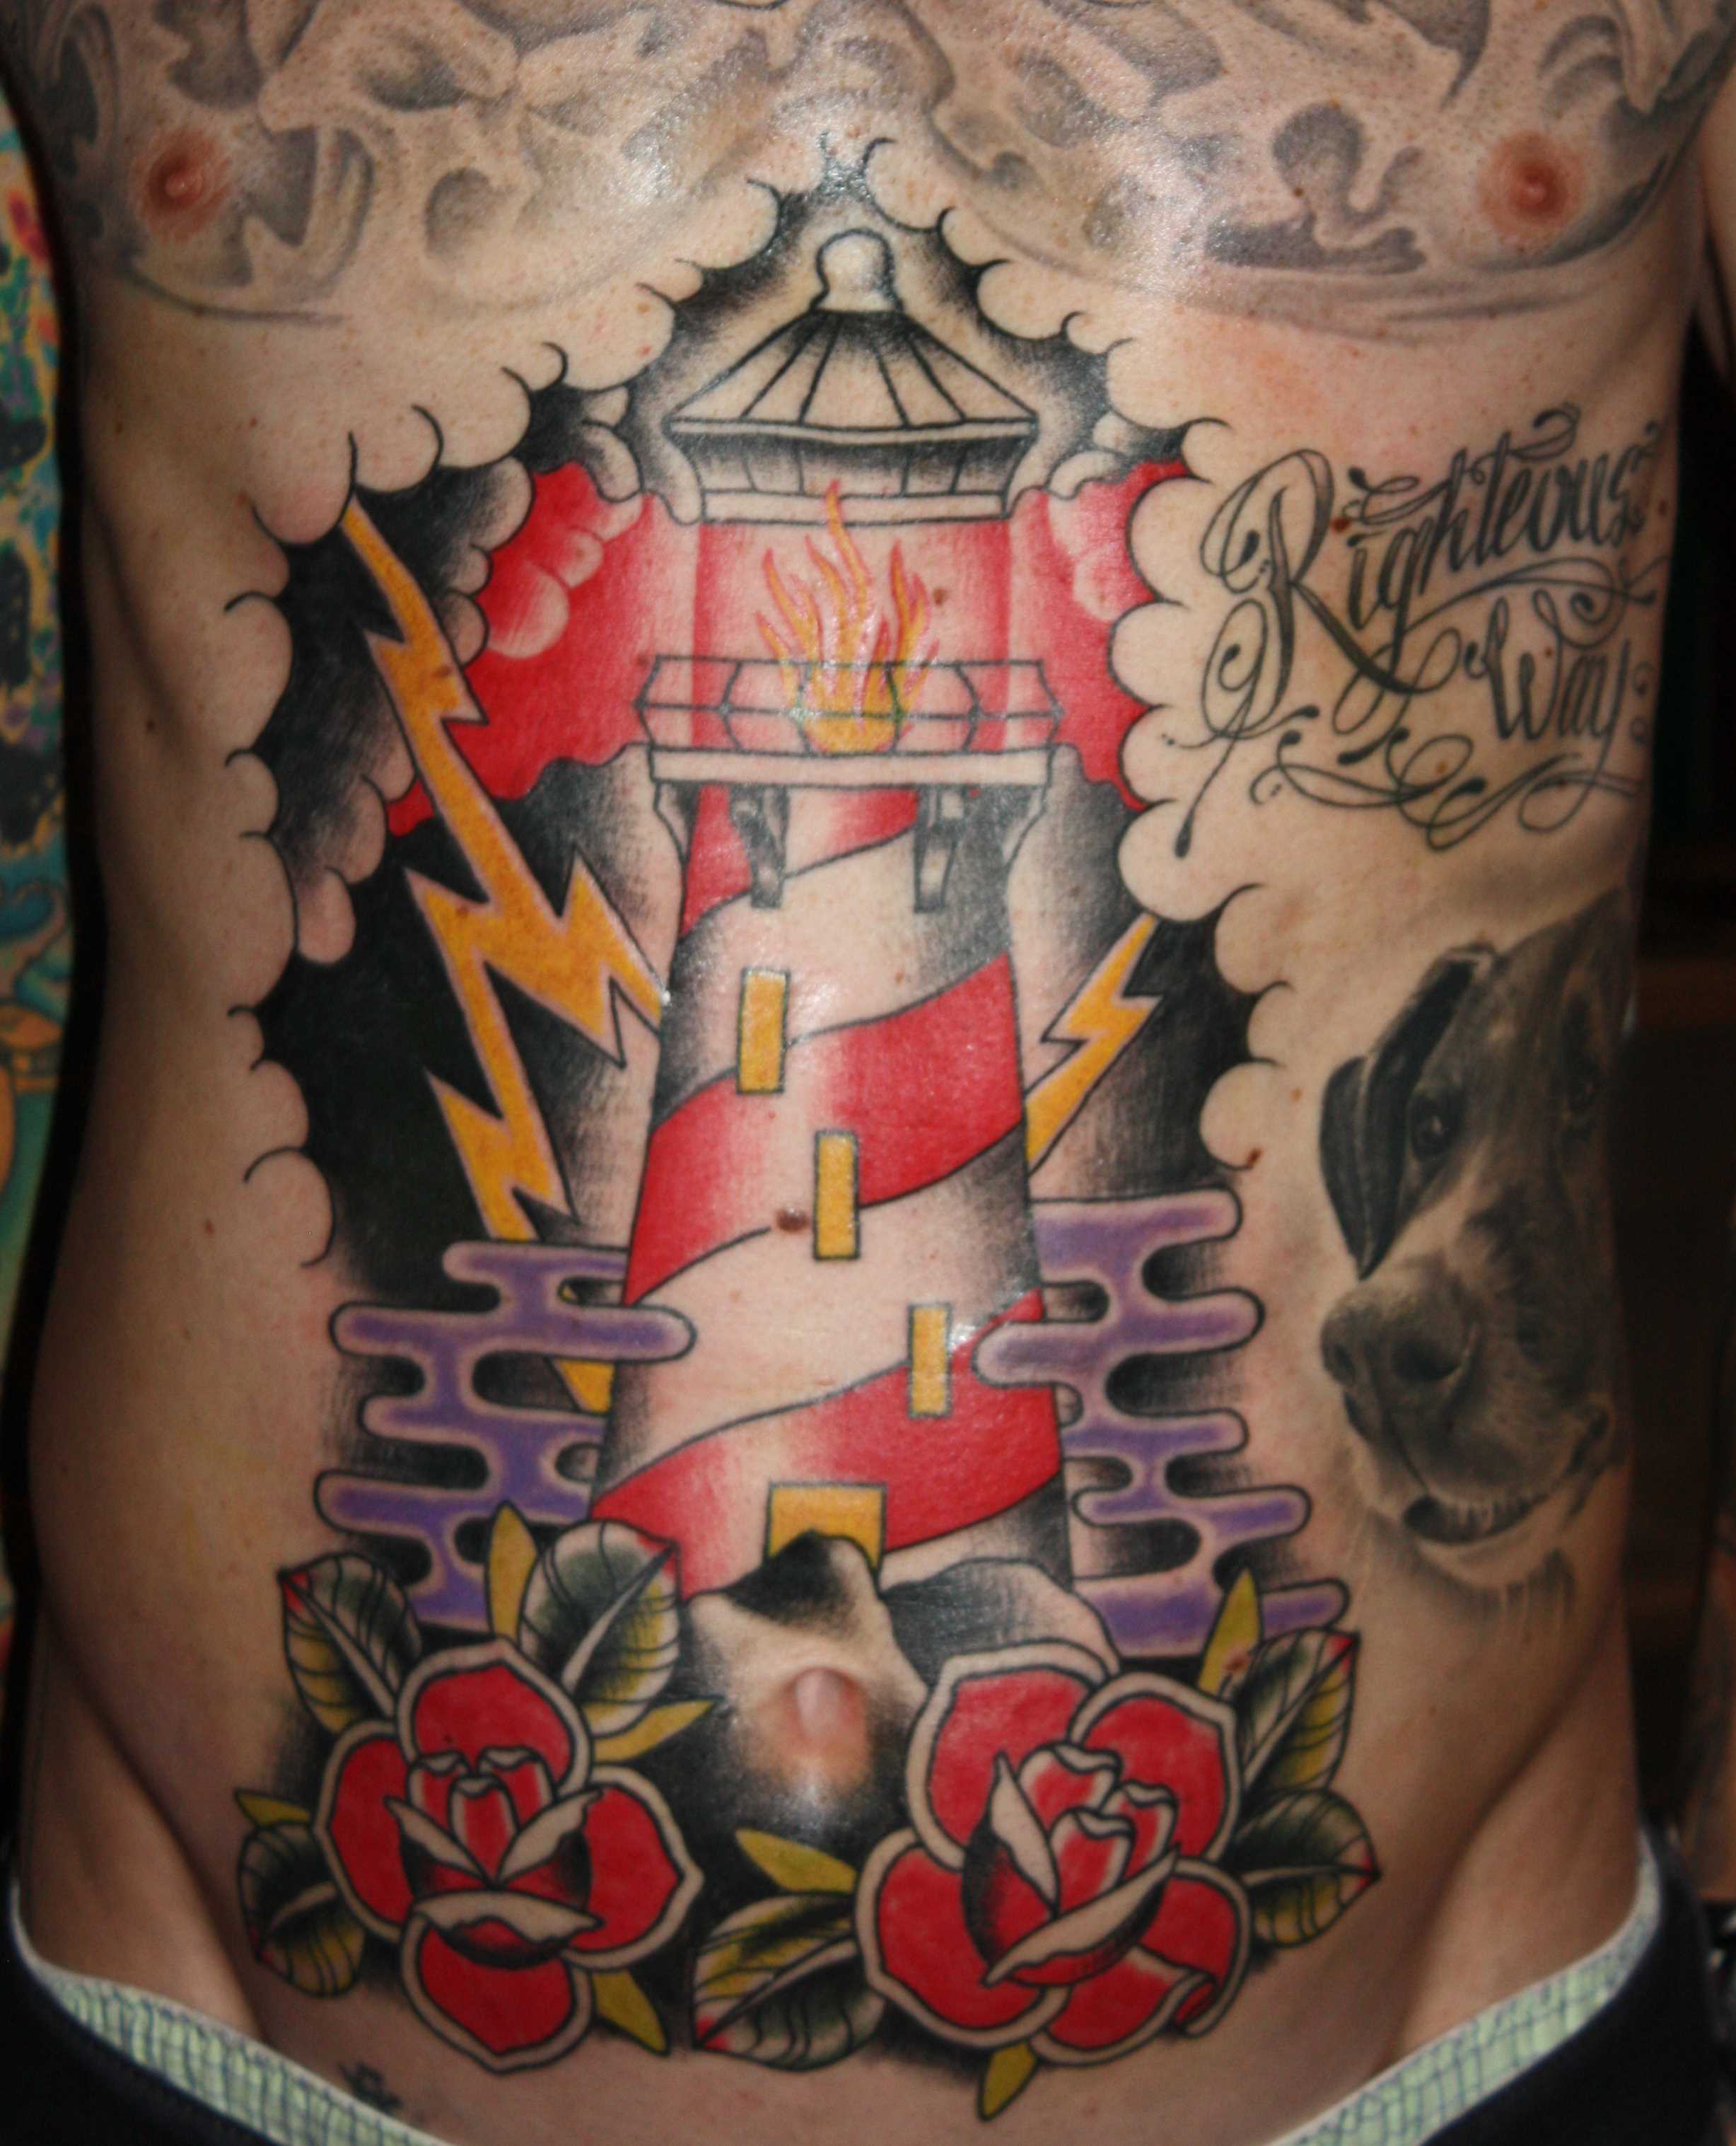 Tatuagem na barriga de um cara - farol, cep e rosas